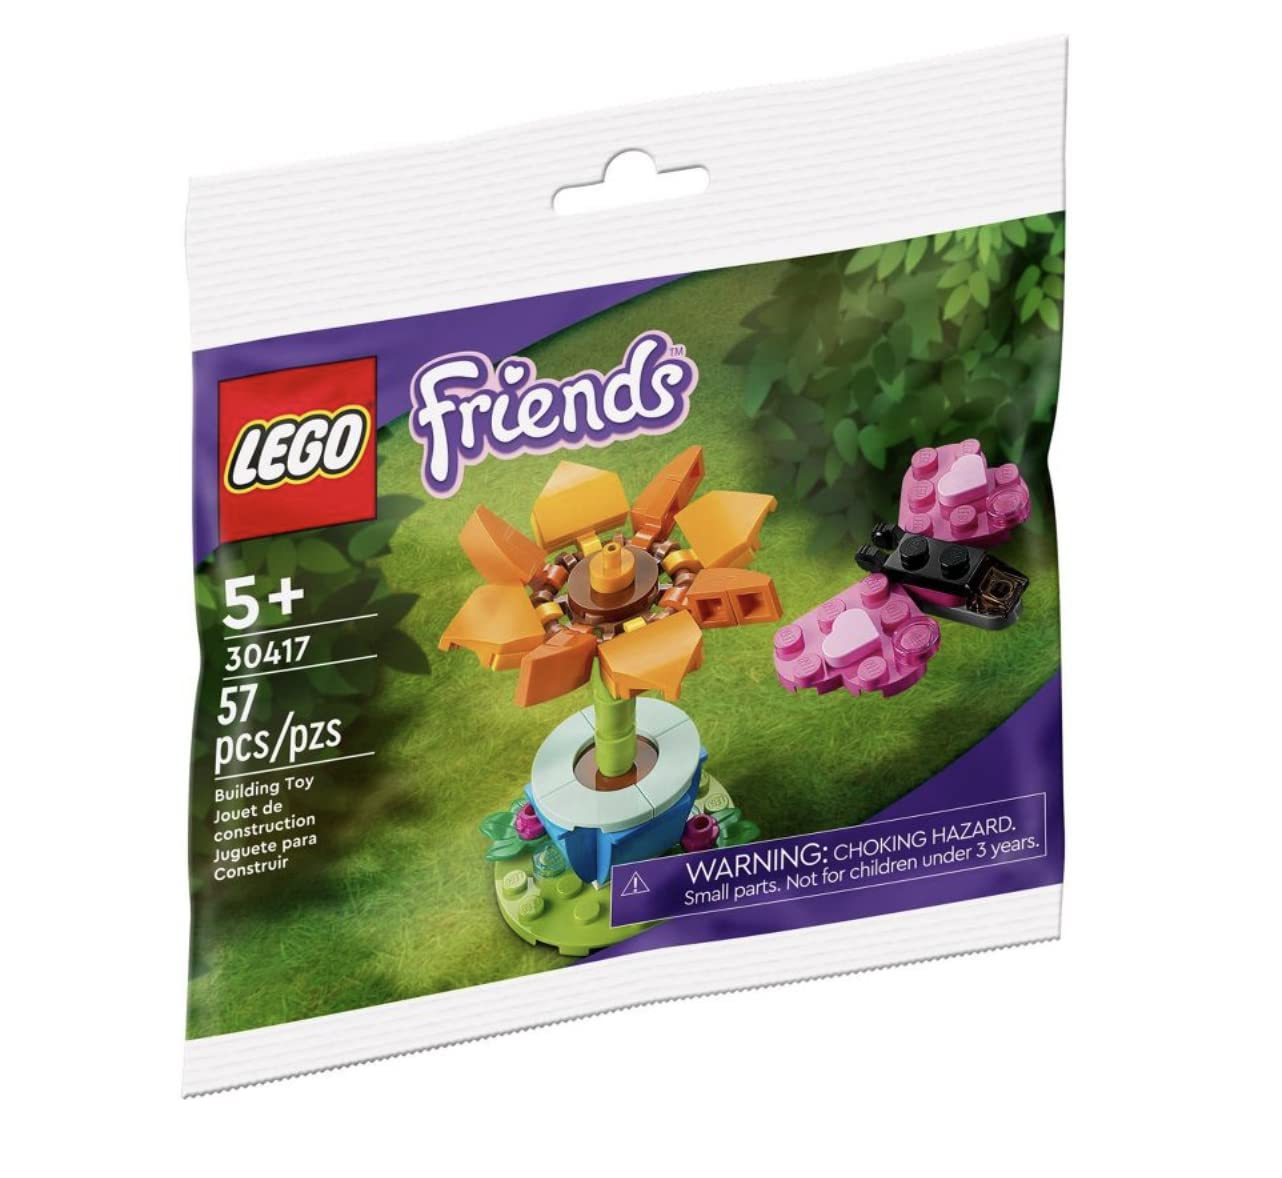 Garden Flower & Butterfly - LEGO Friends Polybag Set (30417)